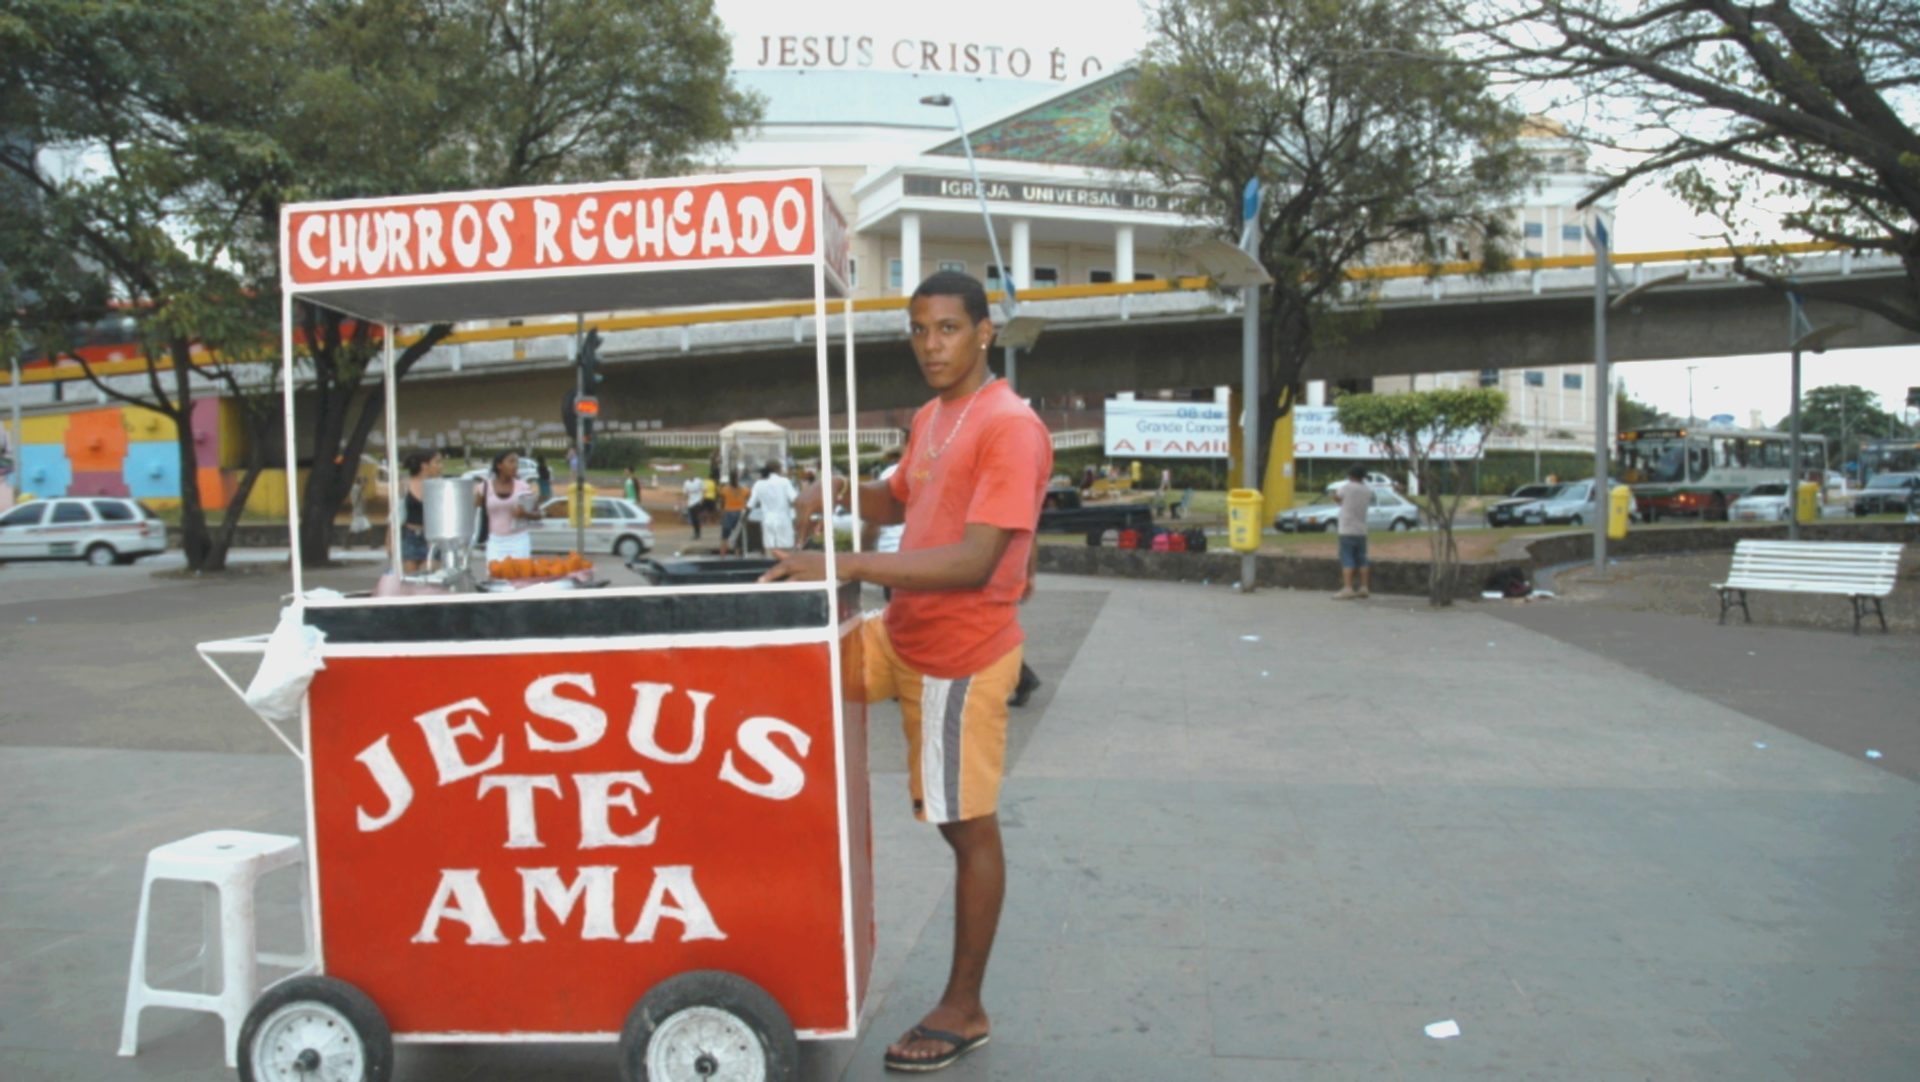 Les pentecôtistes brésiliens sont très prosélytes (photo Jean-Claude Gerez) 